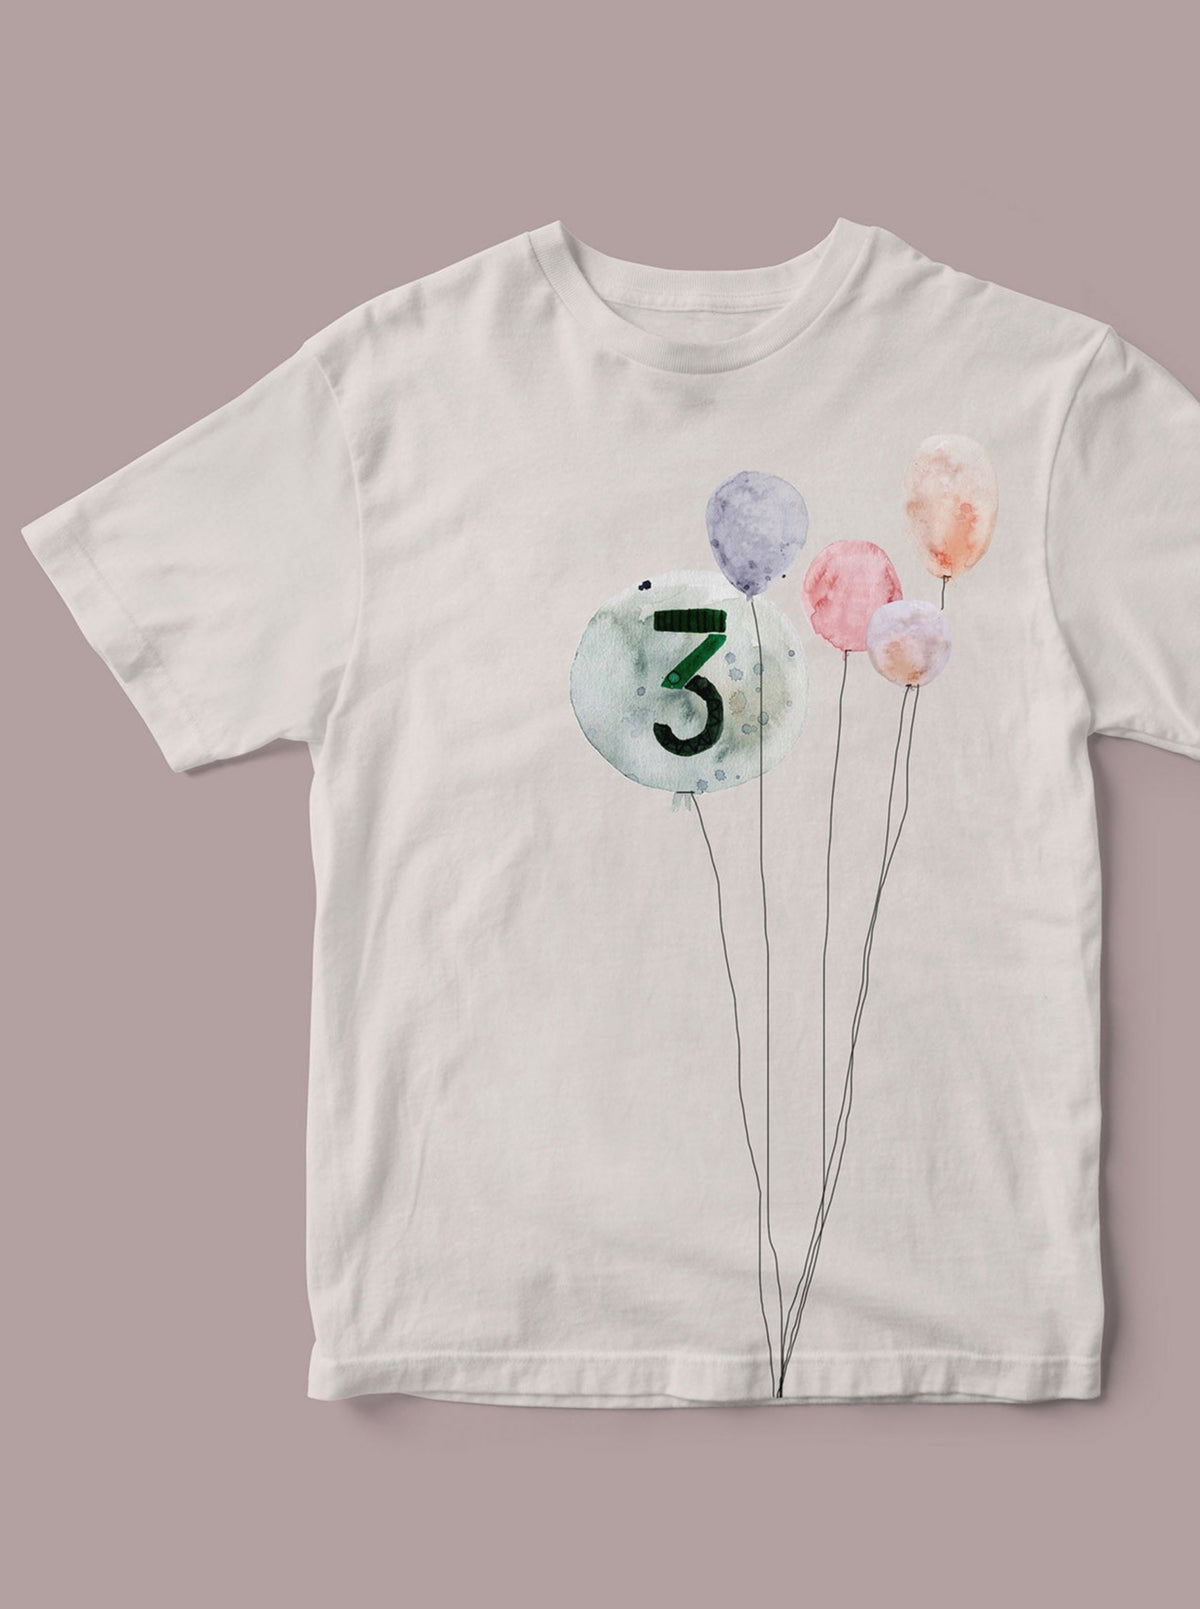 Bügelbild 3. Geburtstag, T-shirt mit Zahl und Luftballons zum Aufbügeln